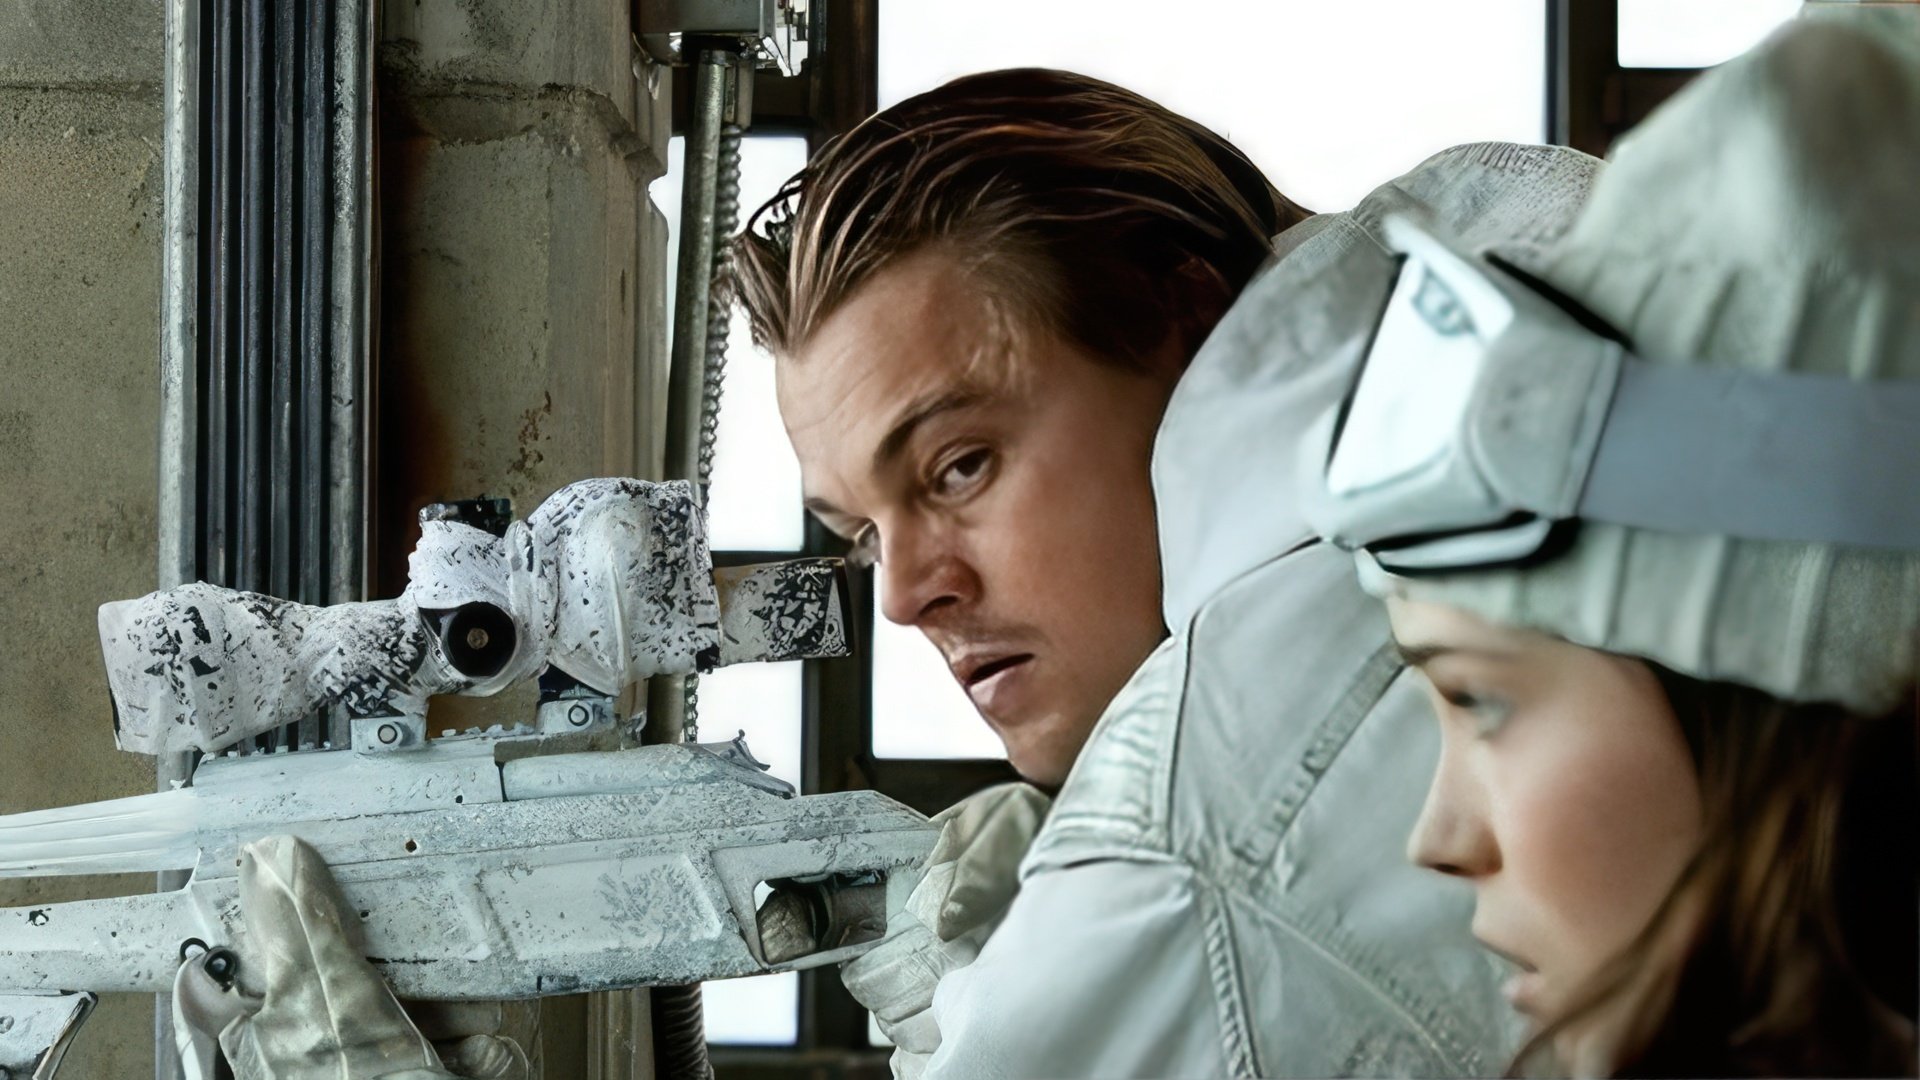 Leonardo DiCaprio in the movie 'Inception'